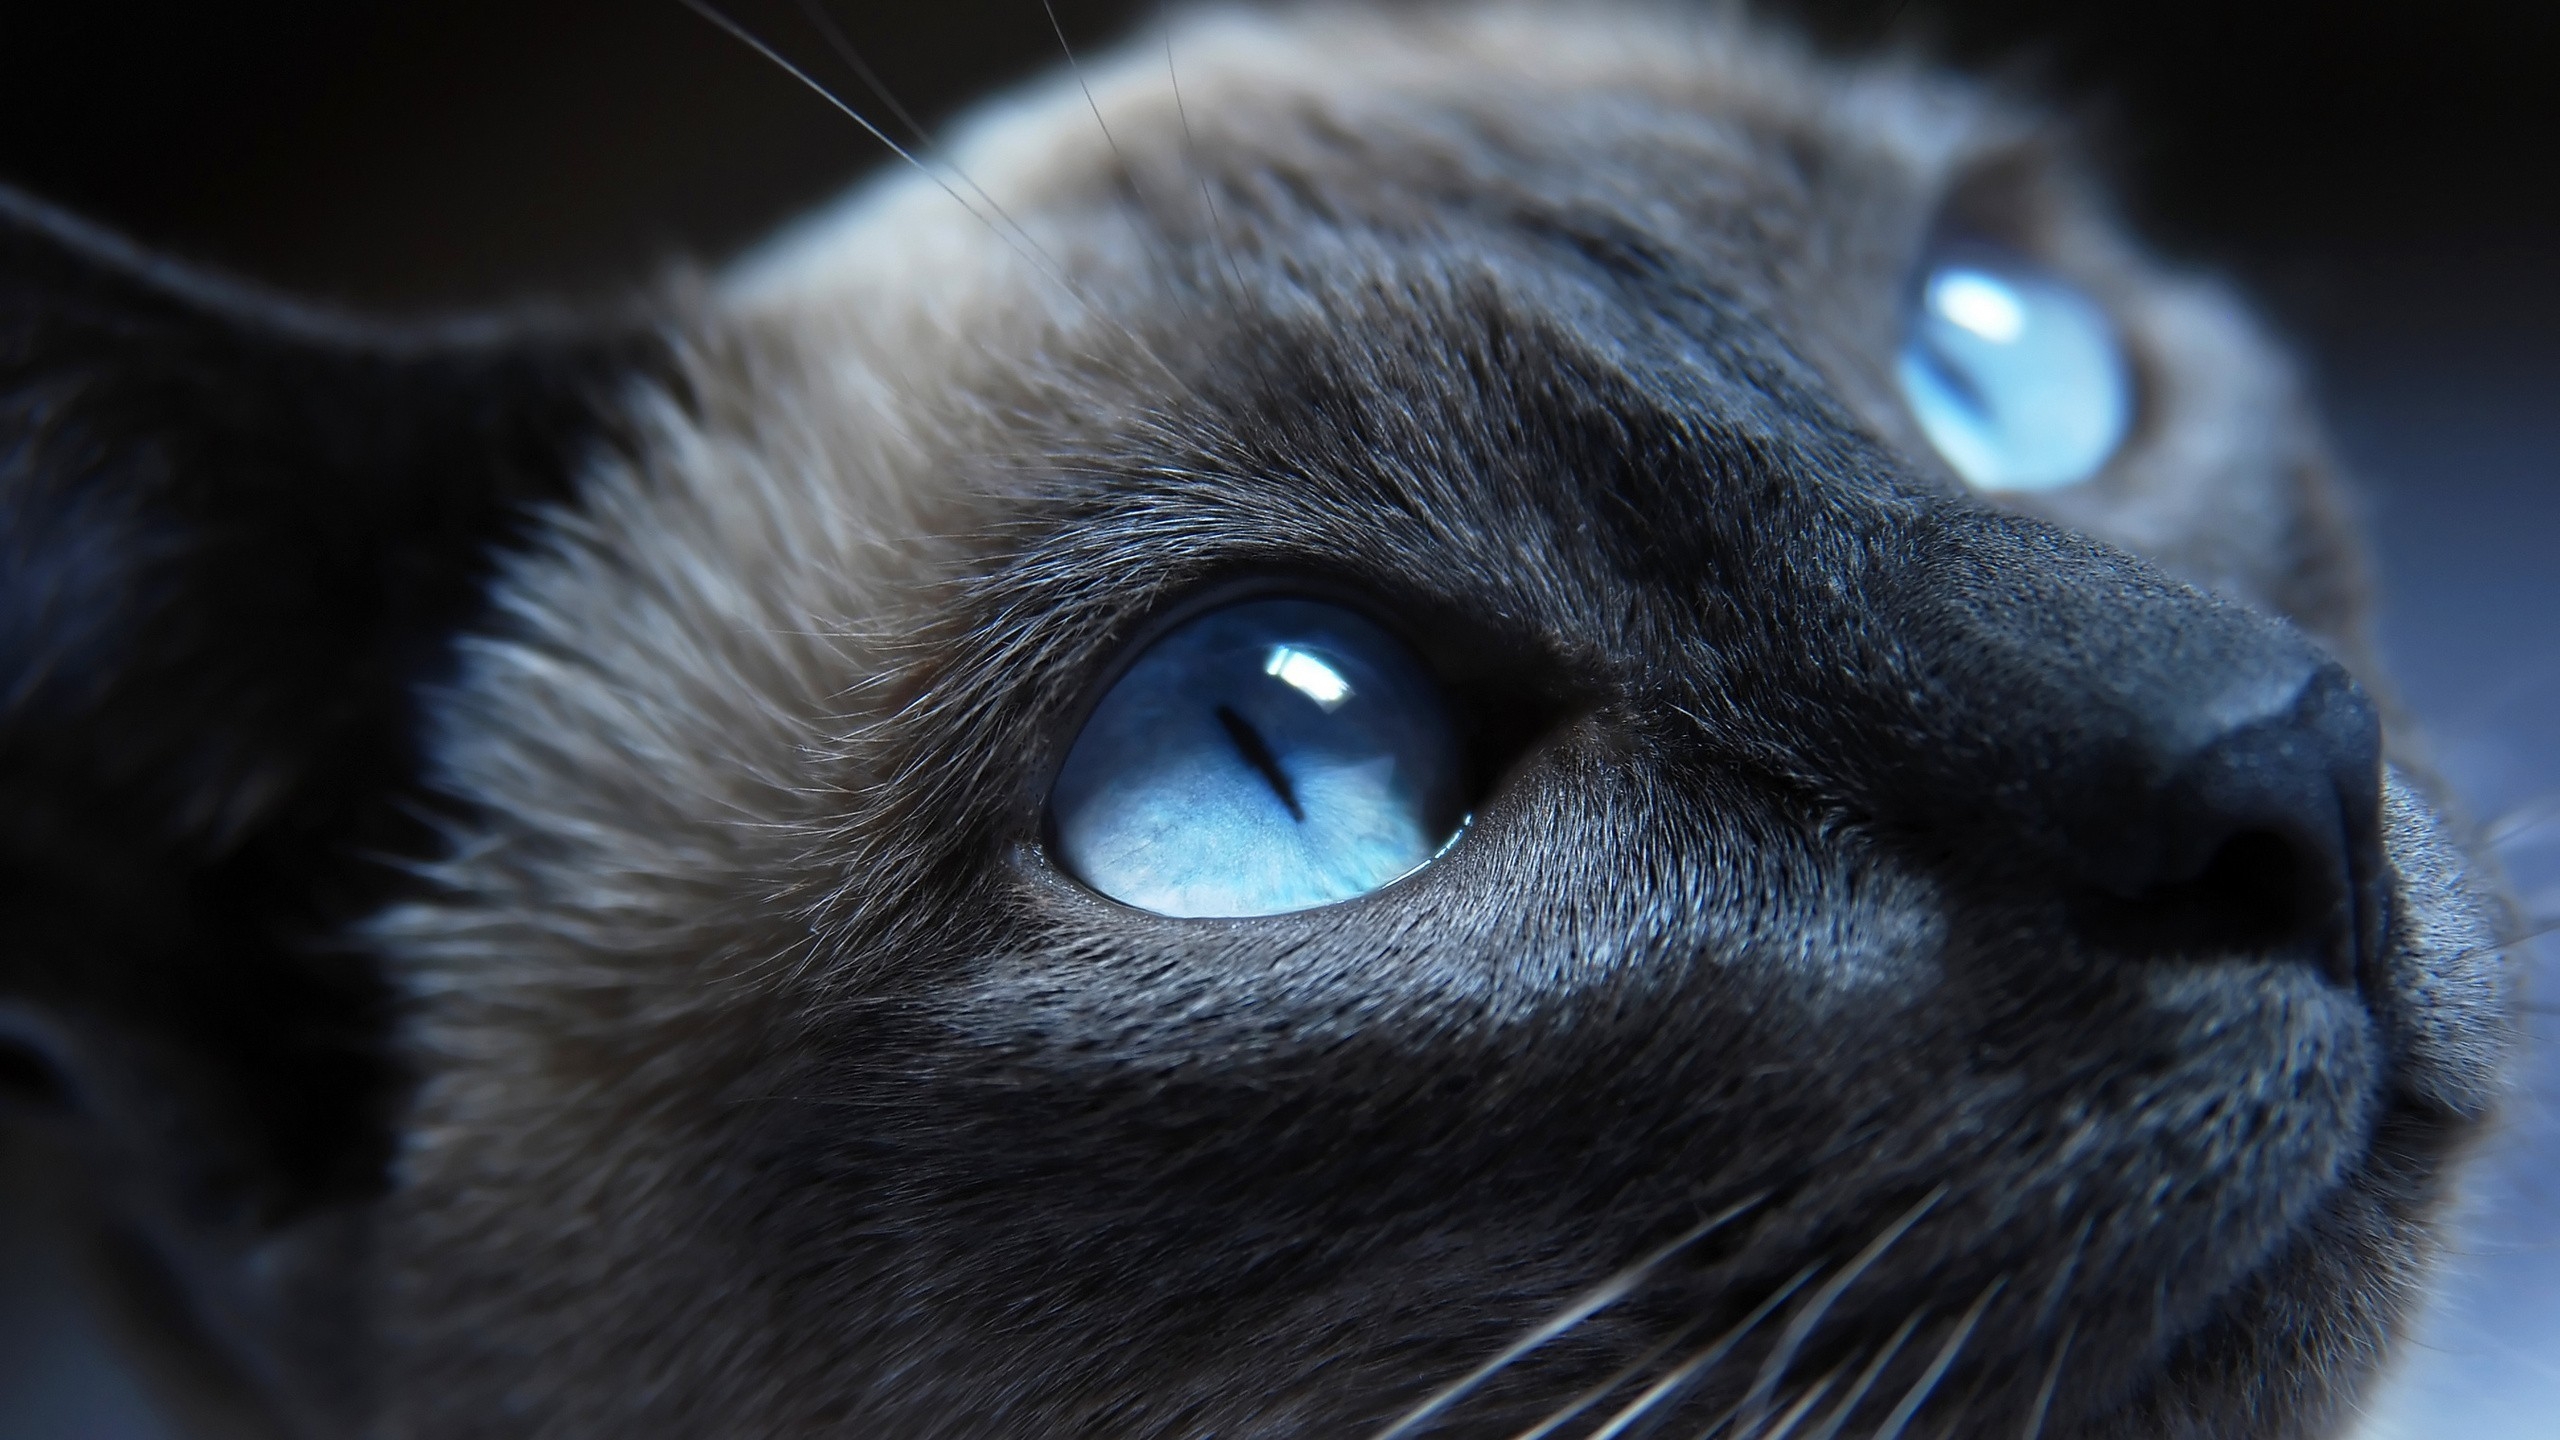 Cat Blue Eyes for 2560x1440 HDTV resolution